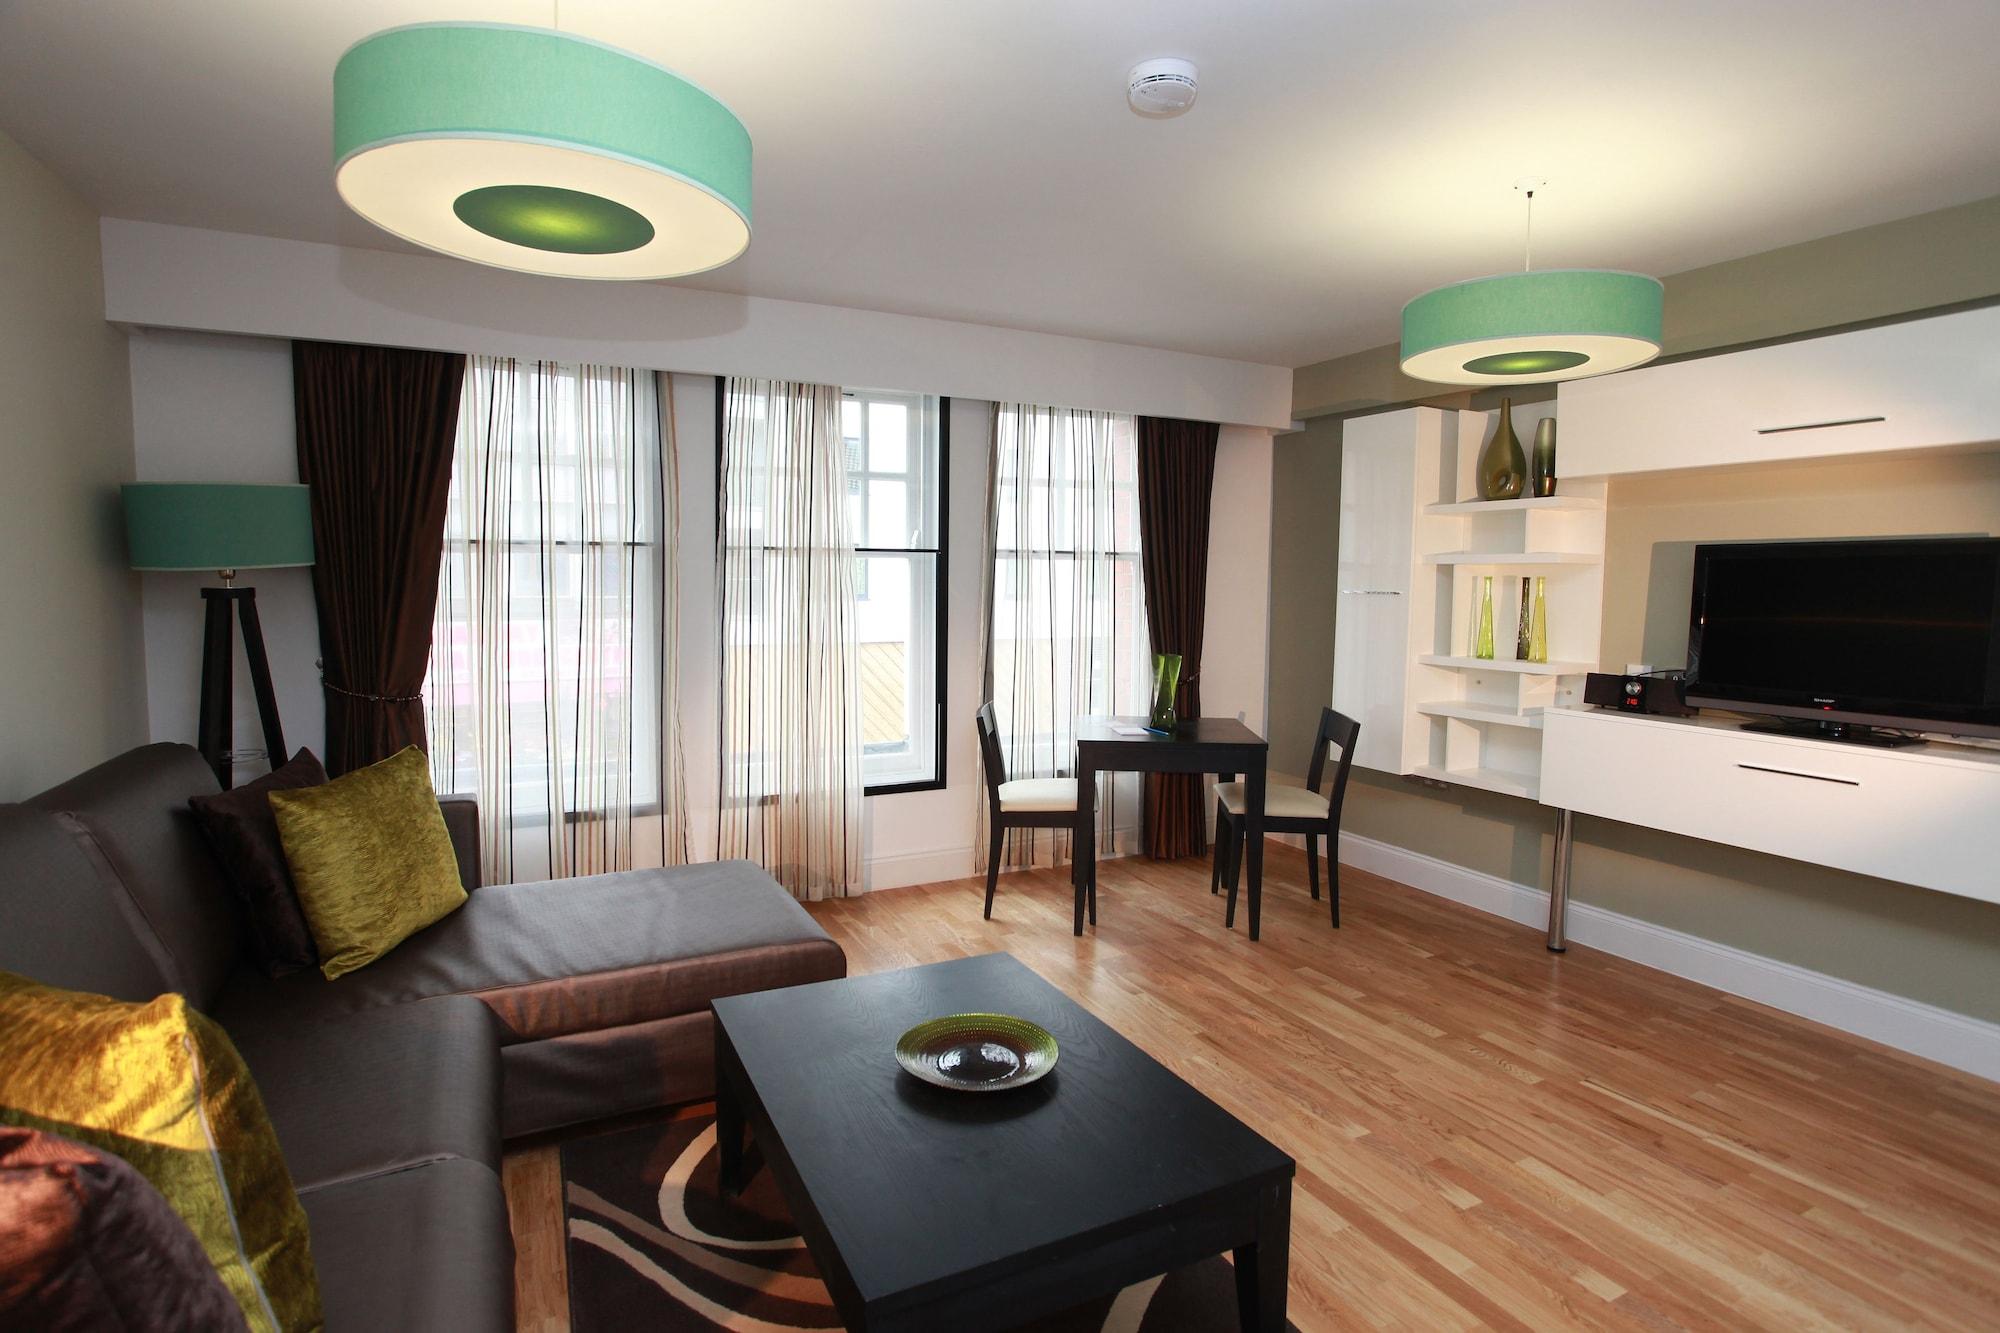 Maitrise Suites Apartment Hotel Ealing – Londres Extérieur photo